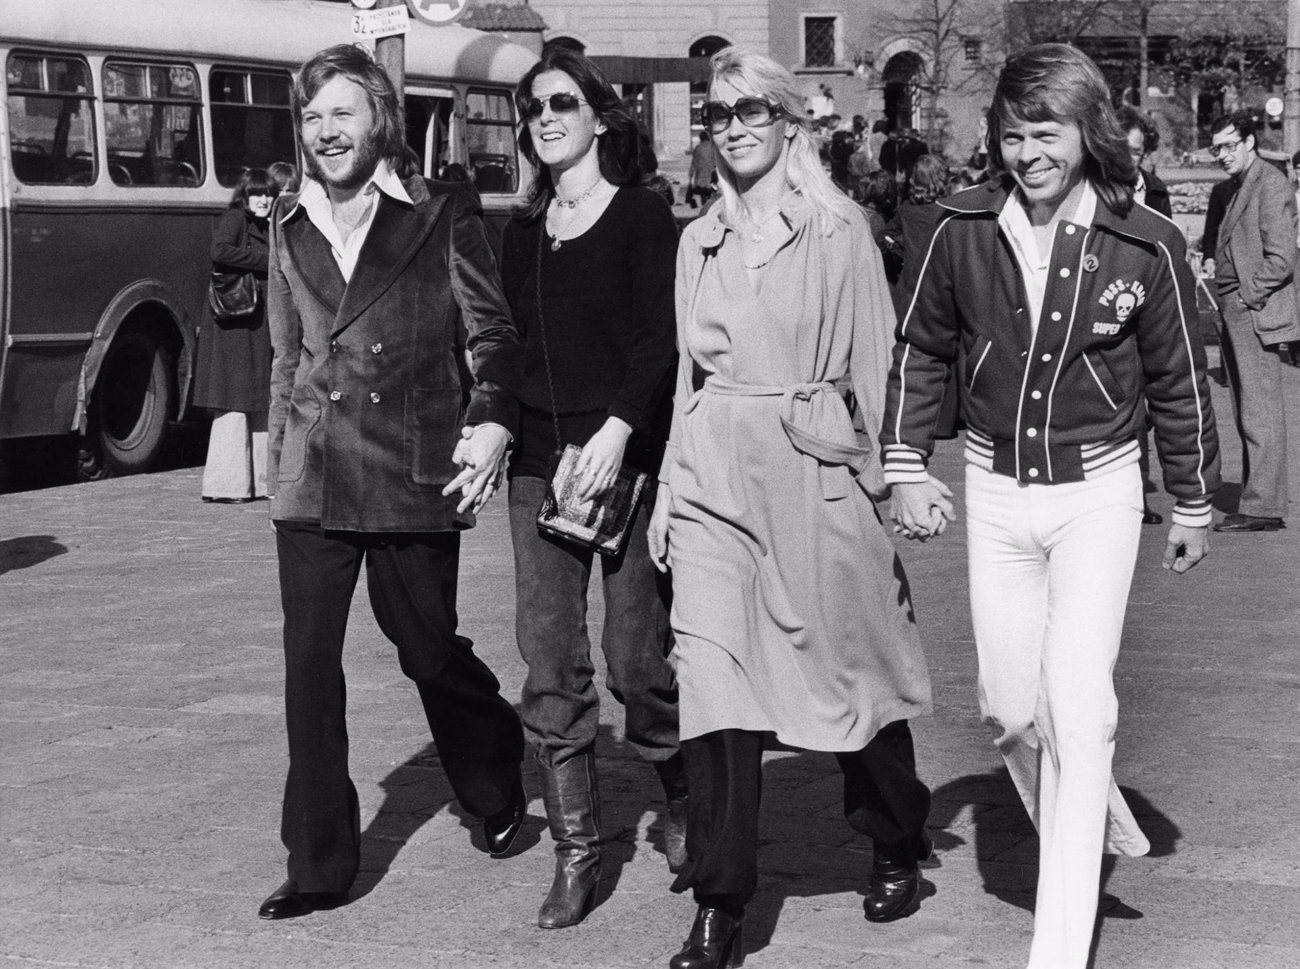 Lasse Wellander, veteran ABBA guitarist, dies at age 70